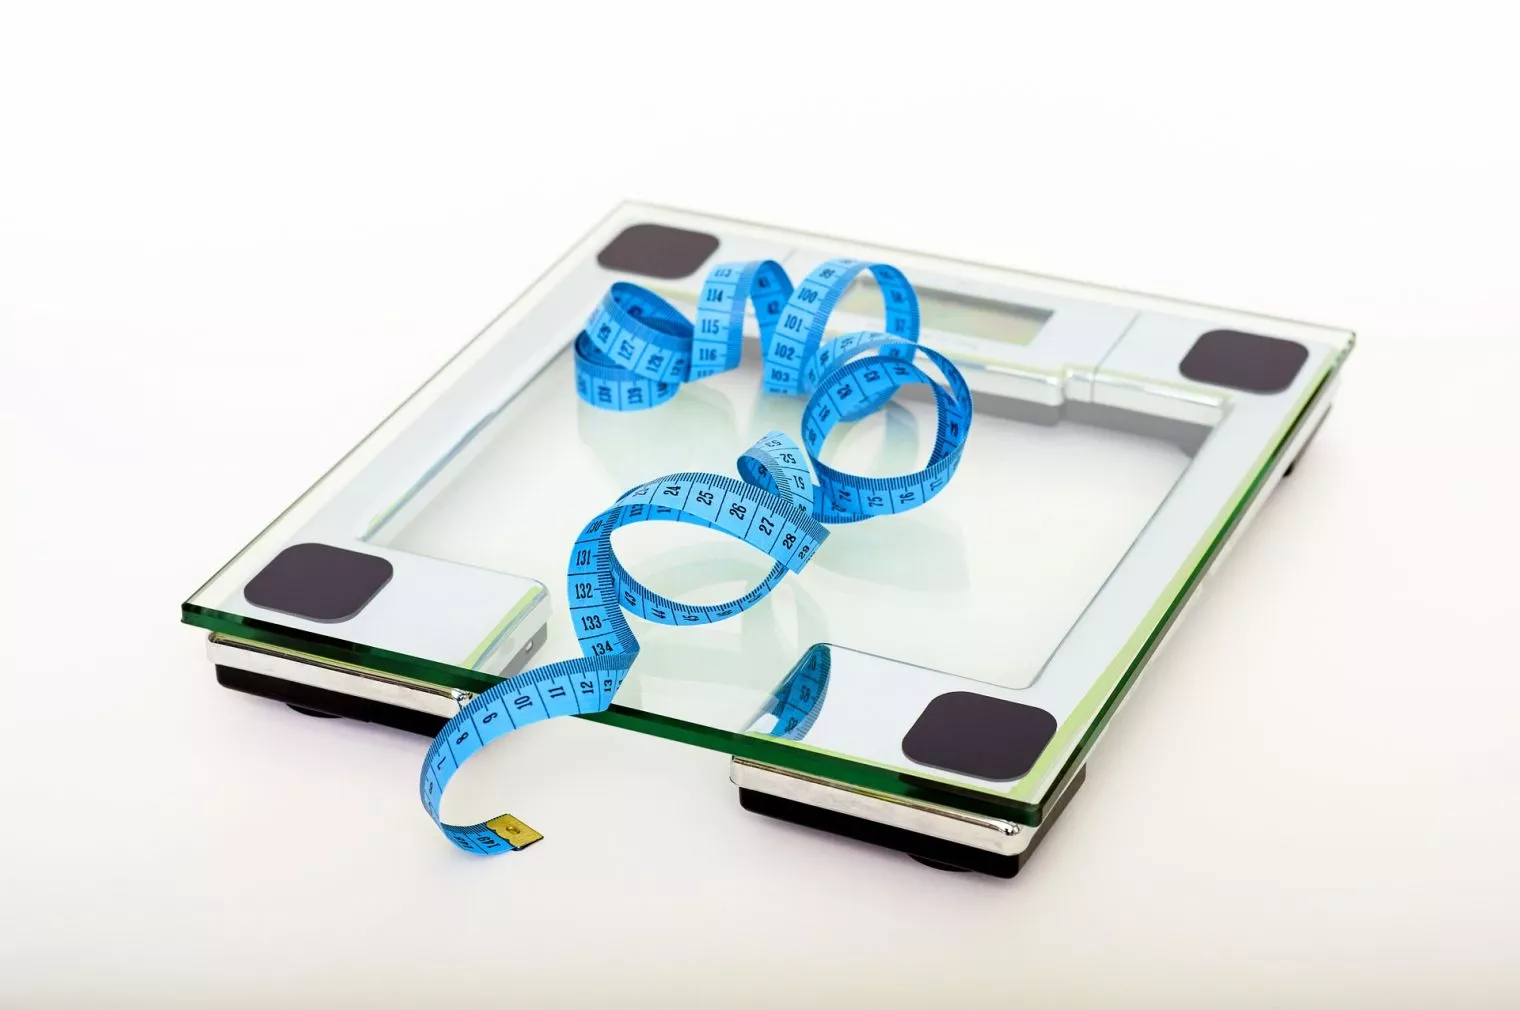 Cara Menghitung BMI